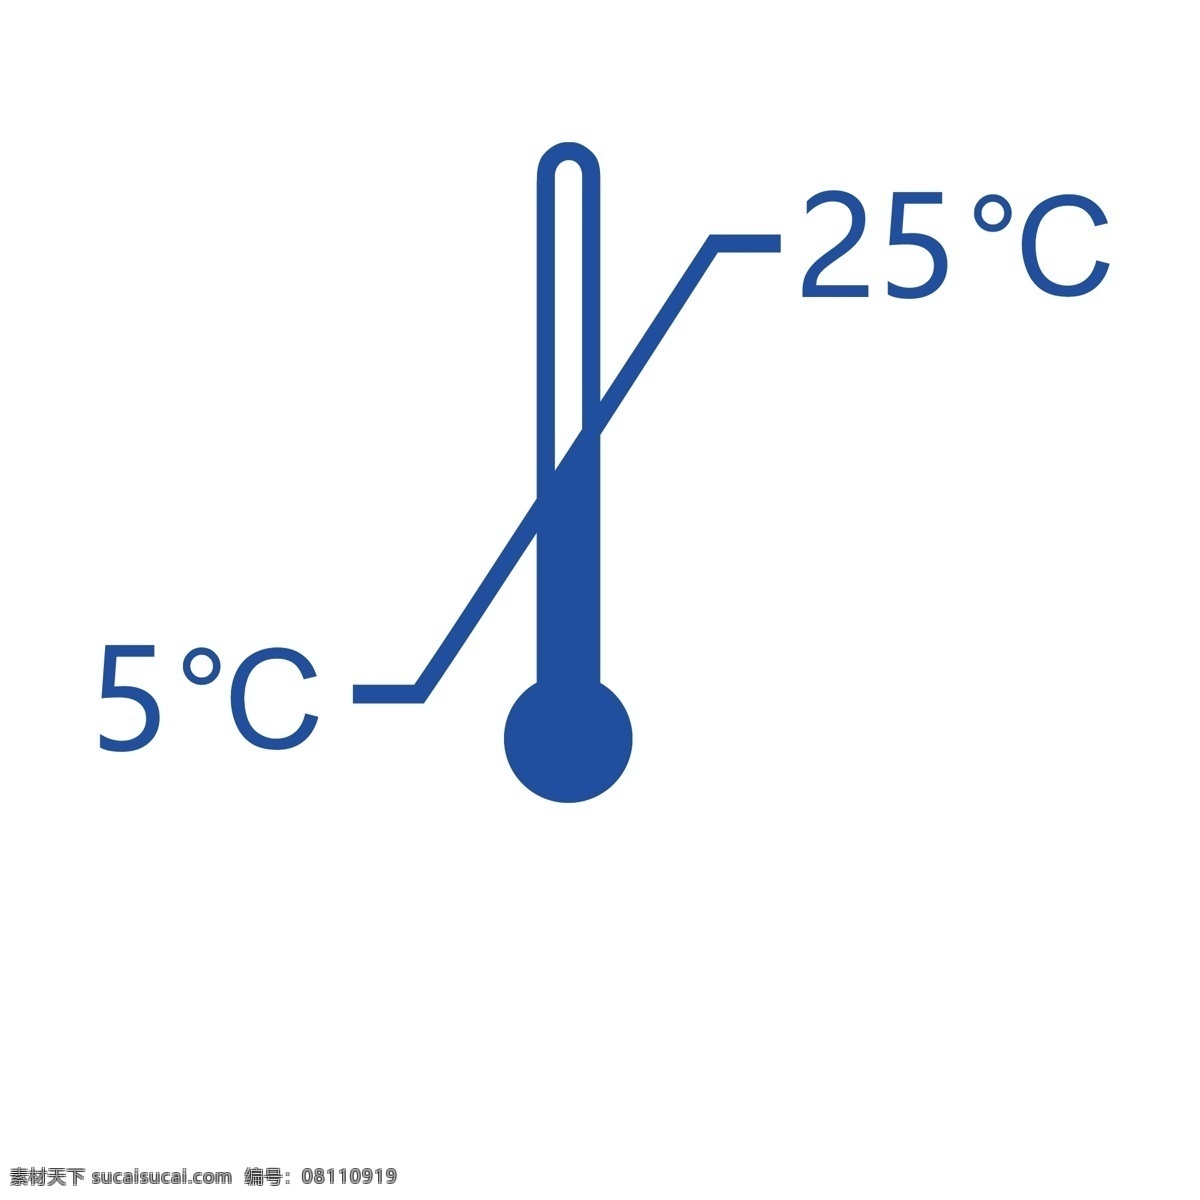 温度限制图片 温度 限制 五 二十五 摄氏度 环境设计 其他设计